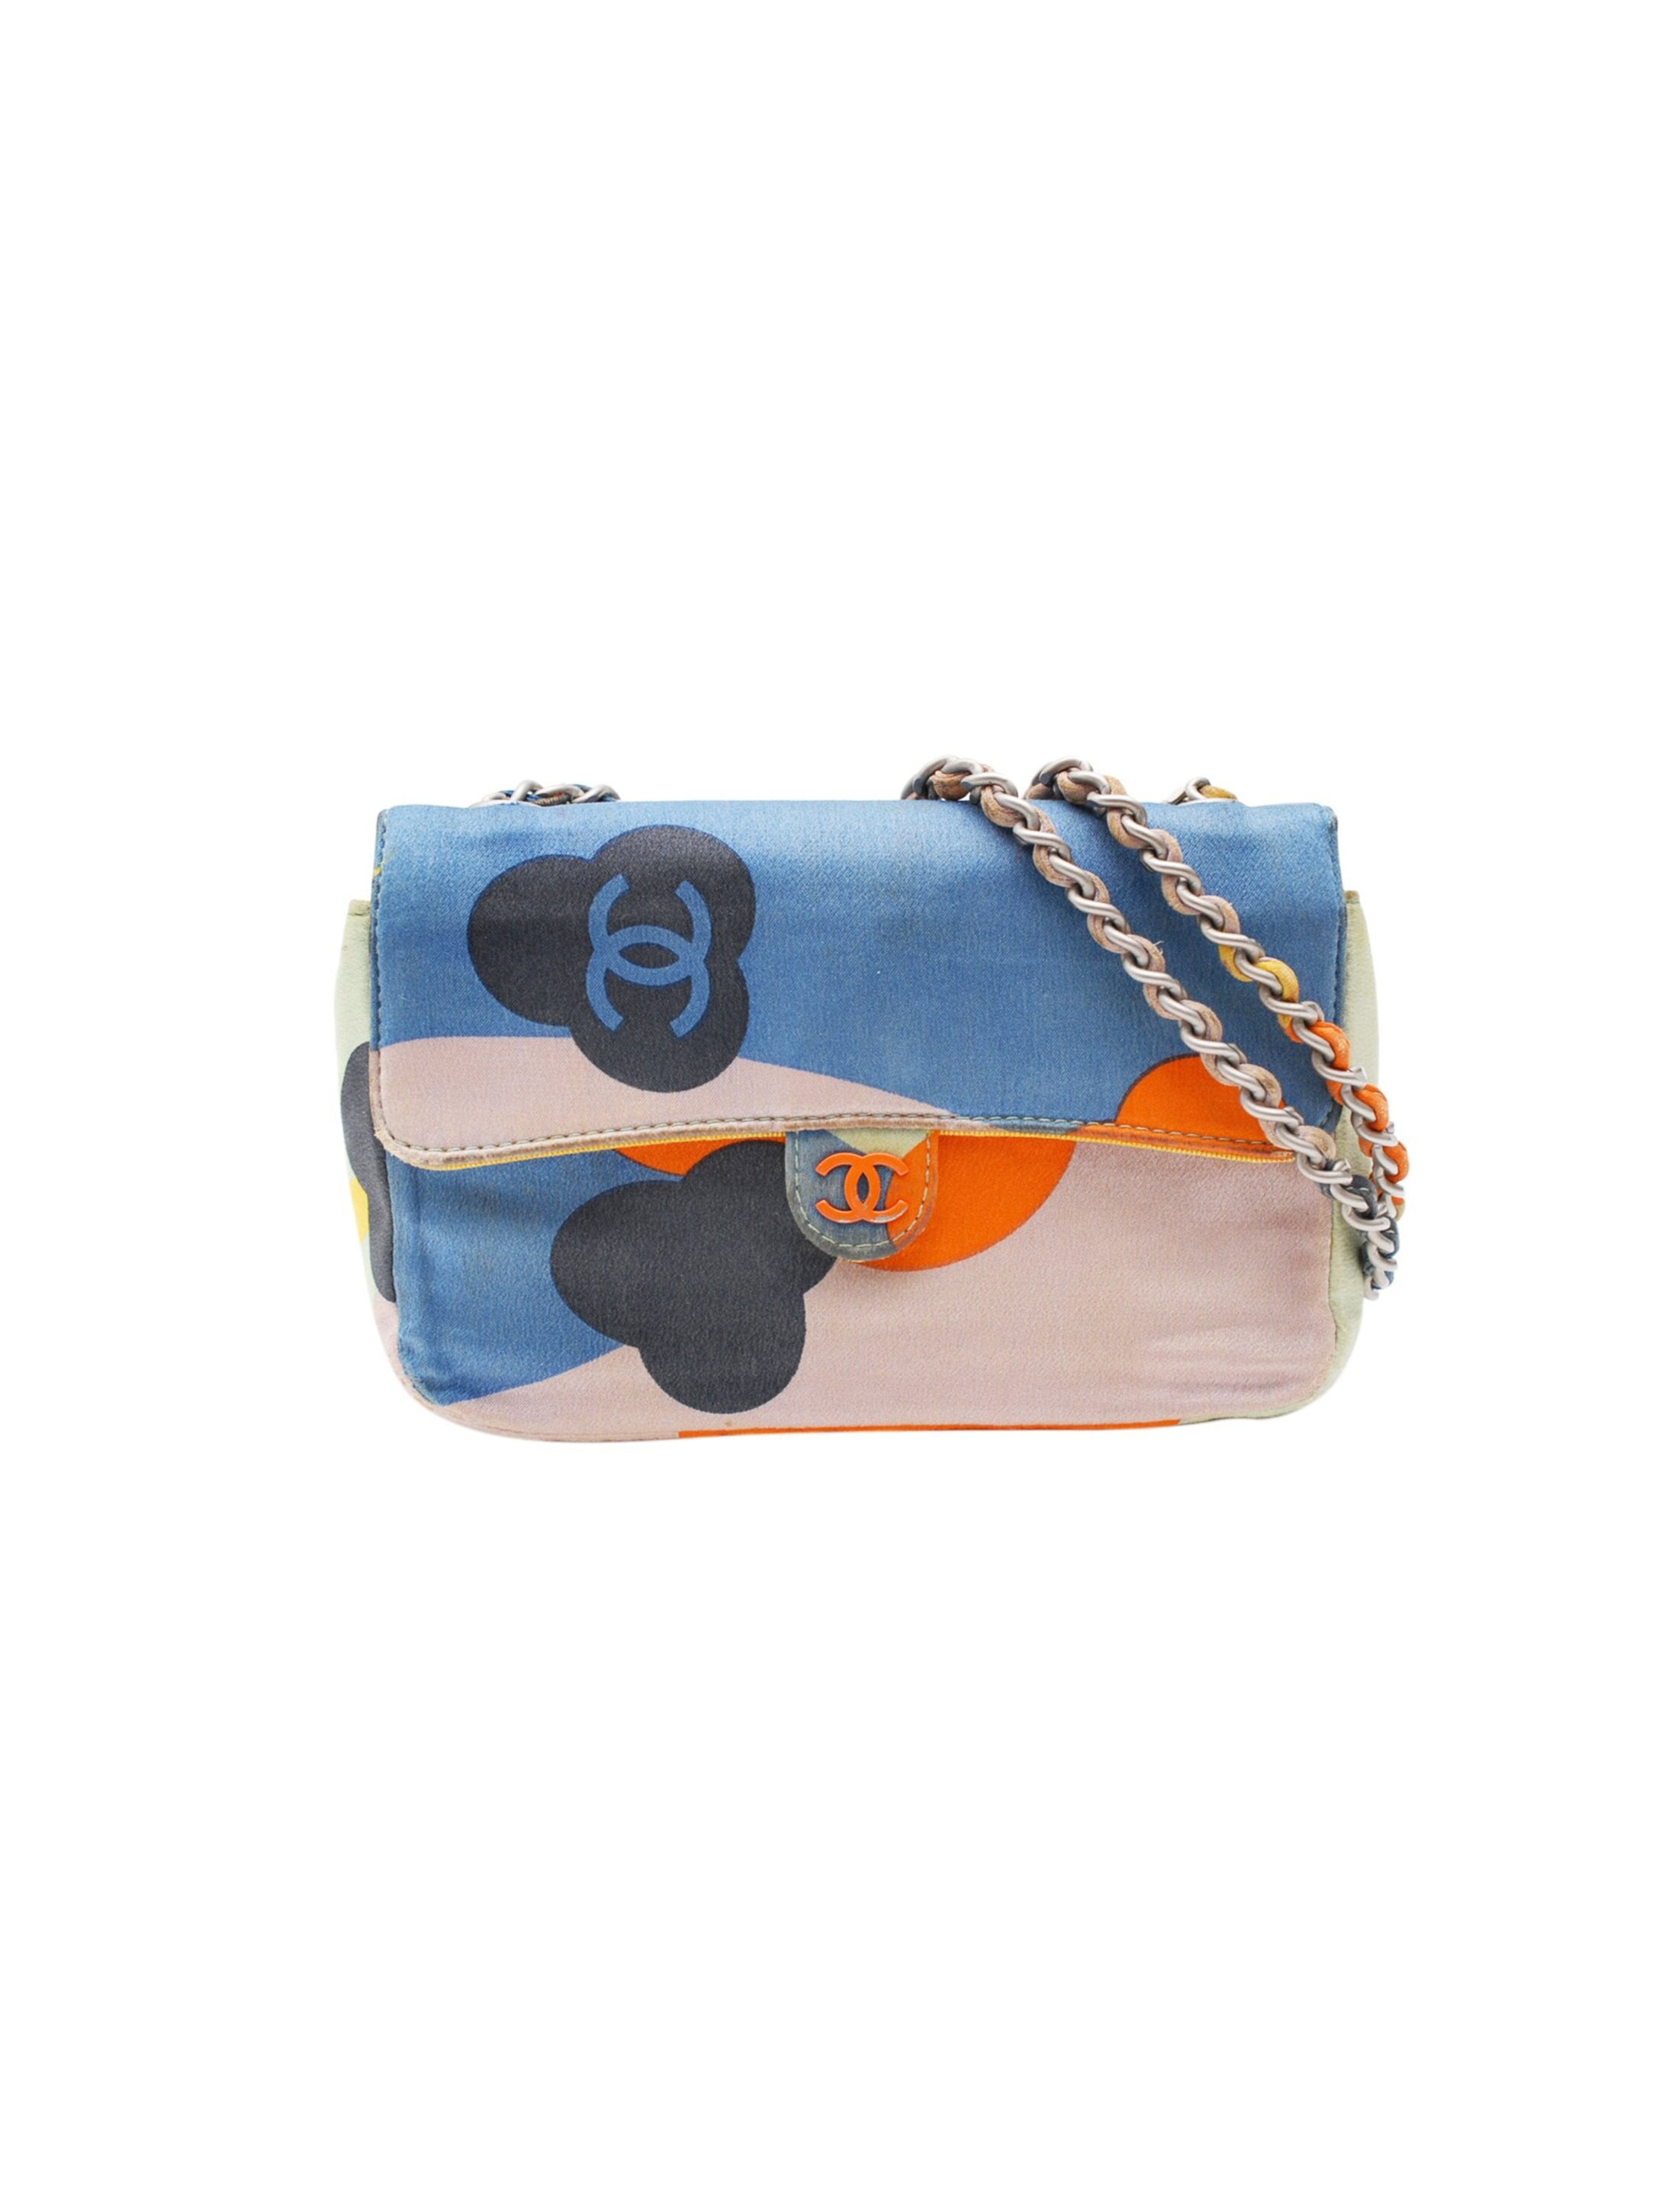 Chanel 2000s Rare Multi-Color Patch Mini Handbag · INTO